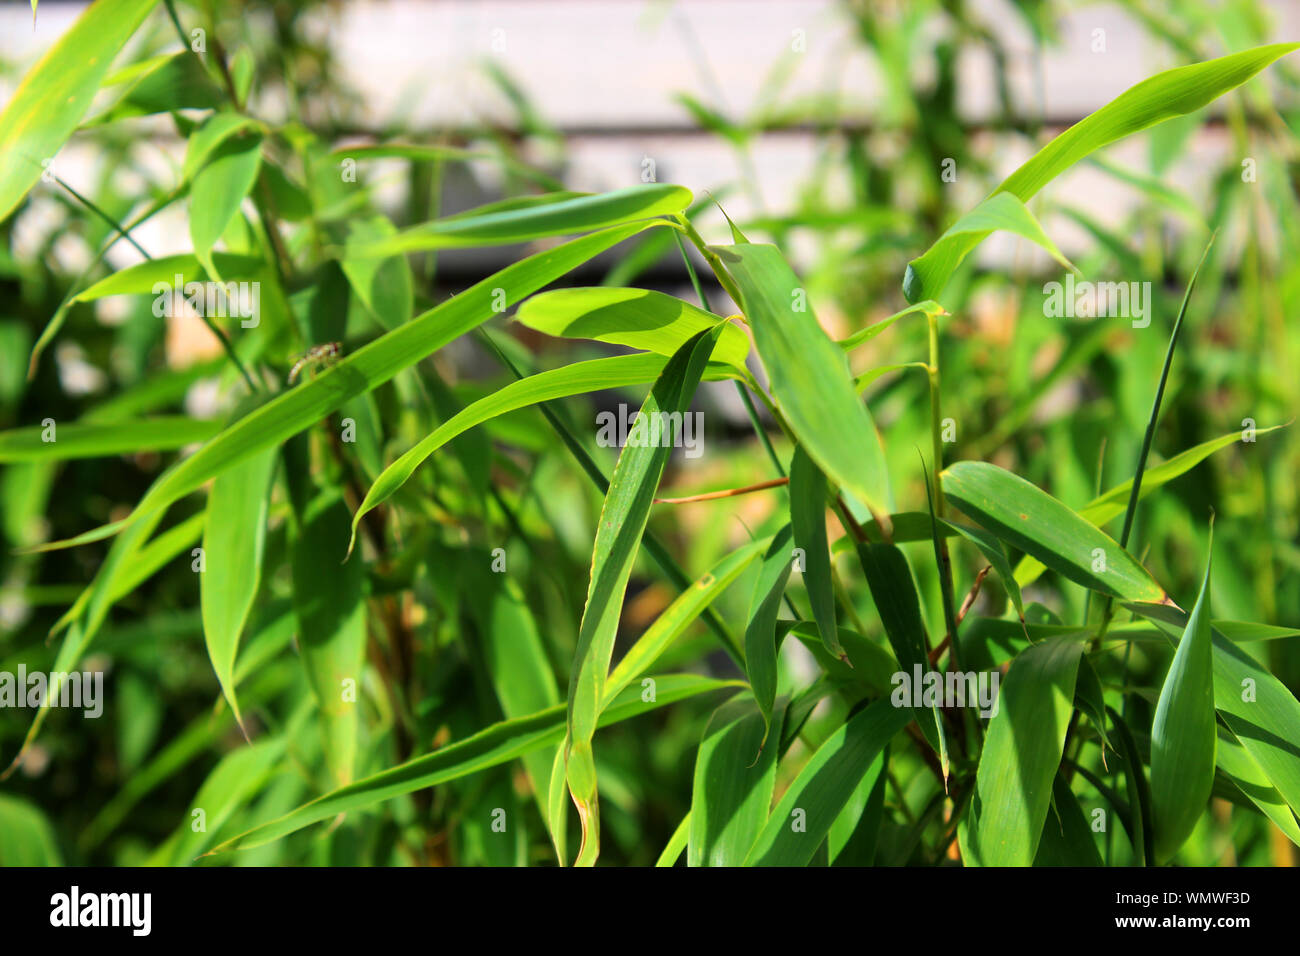 Detailansicht von Bambusblättern Stock Photo